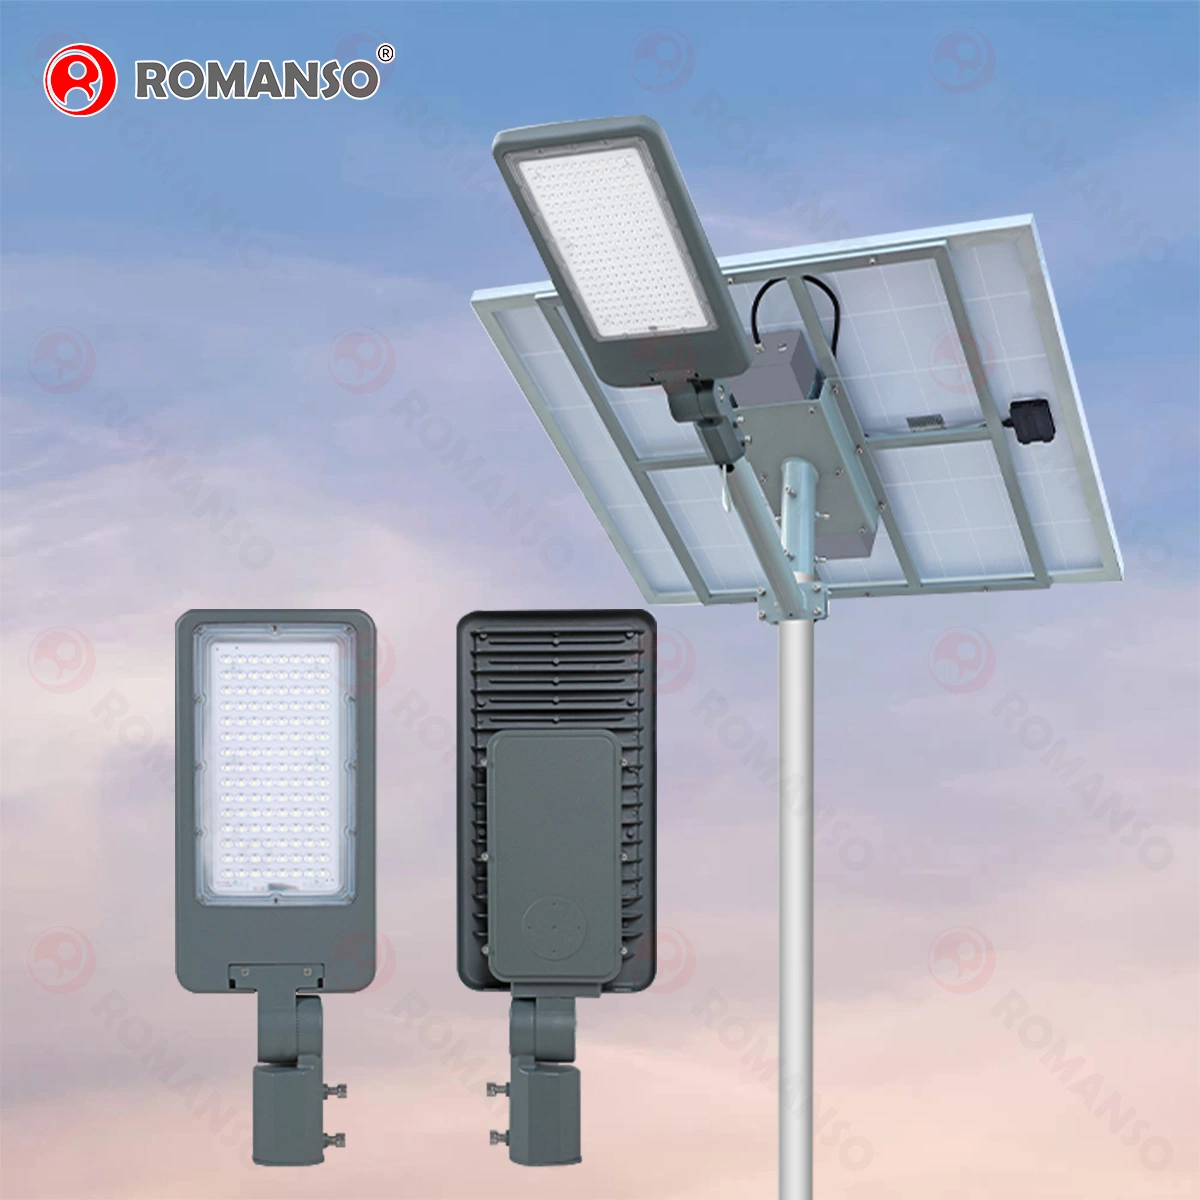 إضاءة شمسية لمصباح LiFePO4 Romso أو ODM Street Lamp المعتمدة من قبل الاتحاد الأوروبي